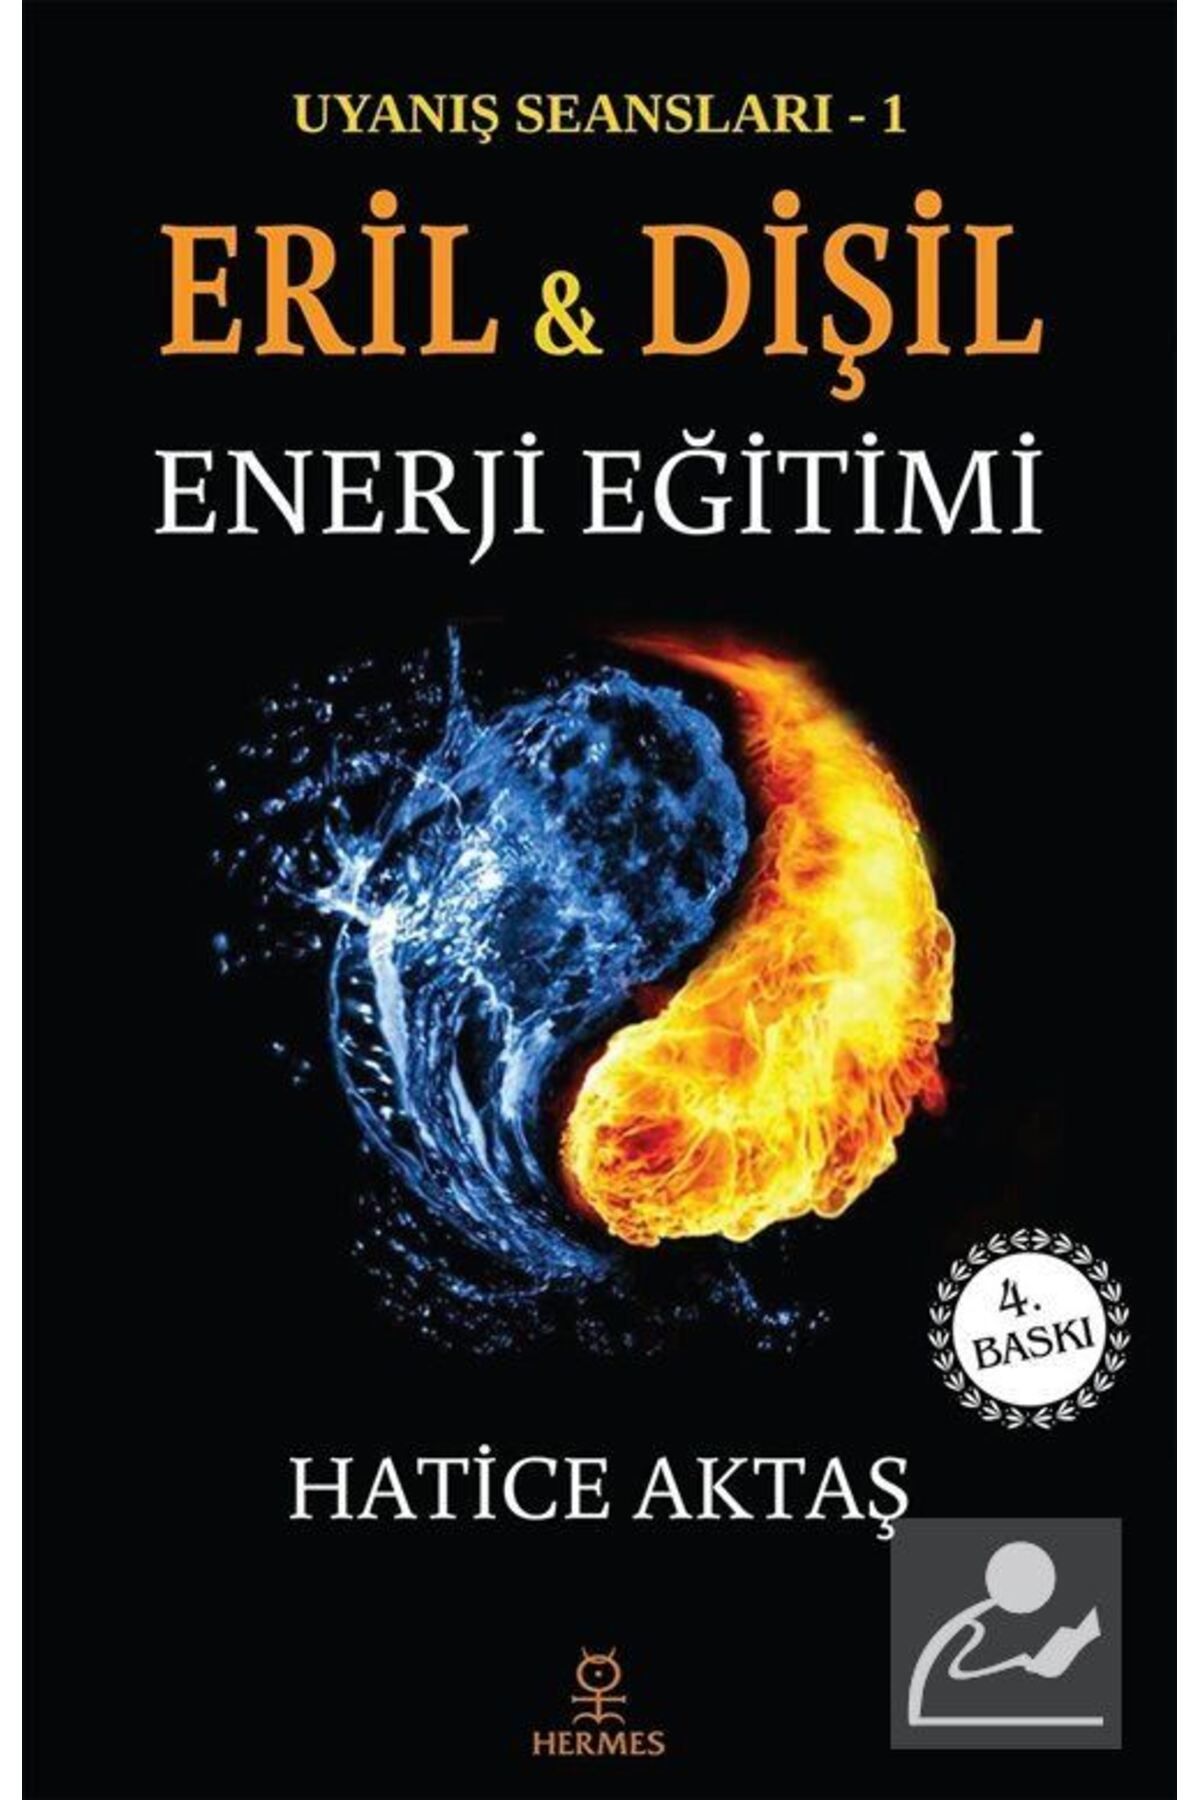 Hermes Yayınları Eril Ve Dişil Enerji Eğitimi & Uyanış Seansları - 1